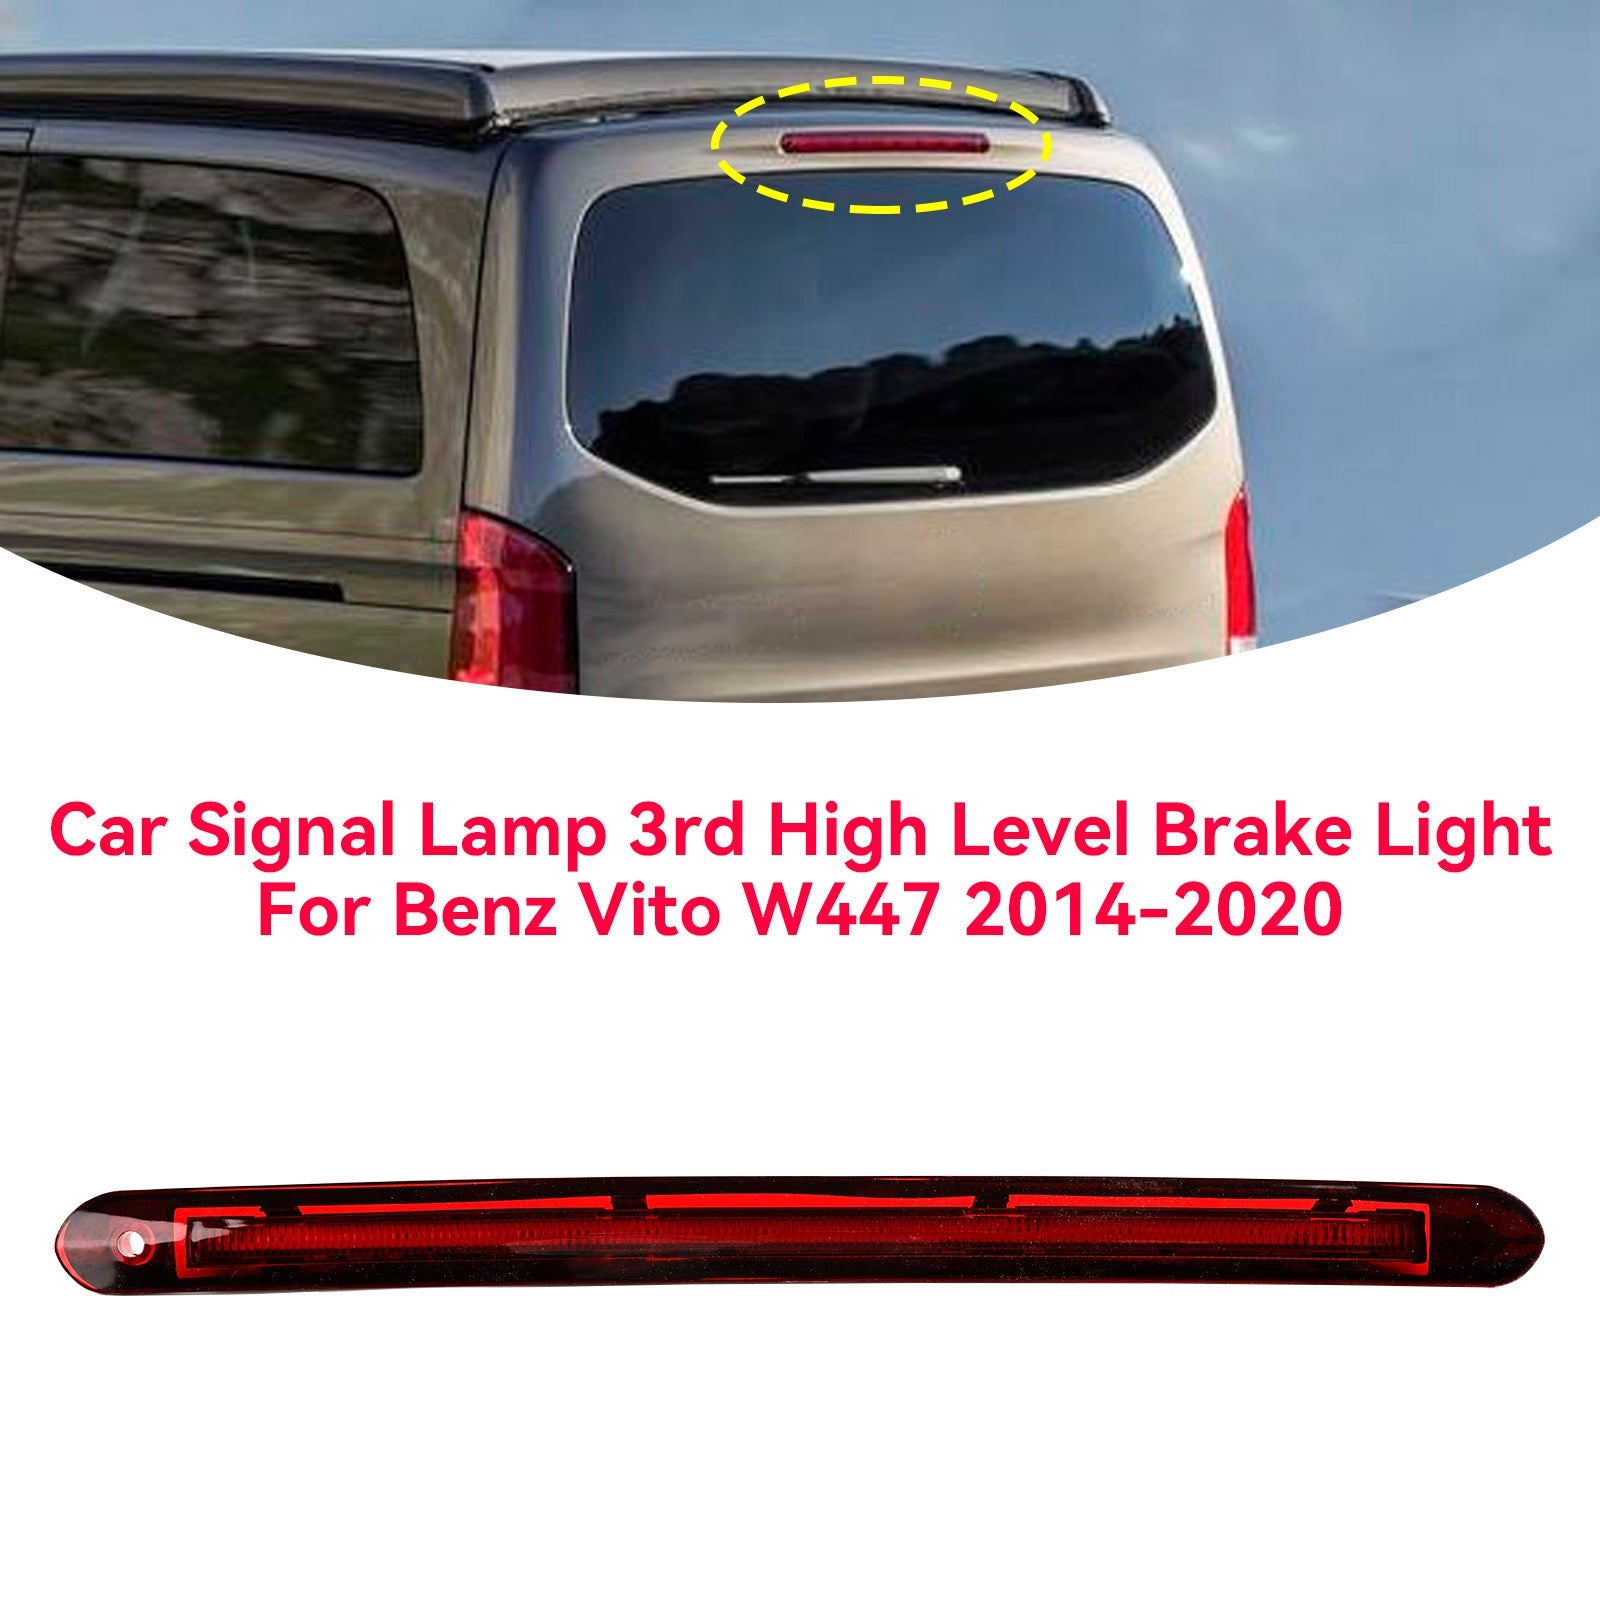 Le migliori offerte per Benz Vito W447 2014-2020 Car Signal Lamp High Level 3rd Brake Light sono su ✓ Confronta prezzi e caratteristiche di prodotti nuovi e usati ✓ Molti articoli con consegna gratis!